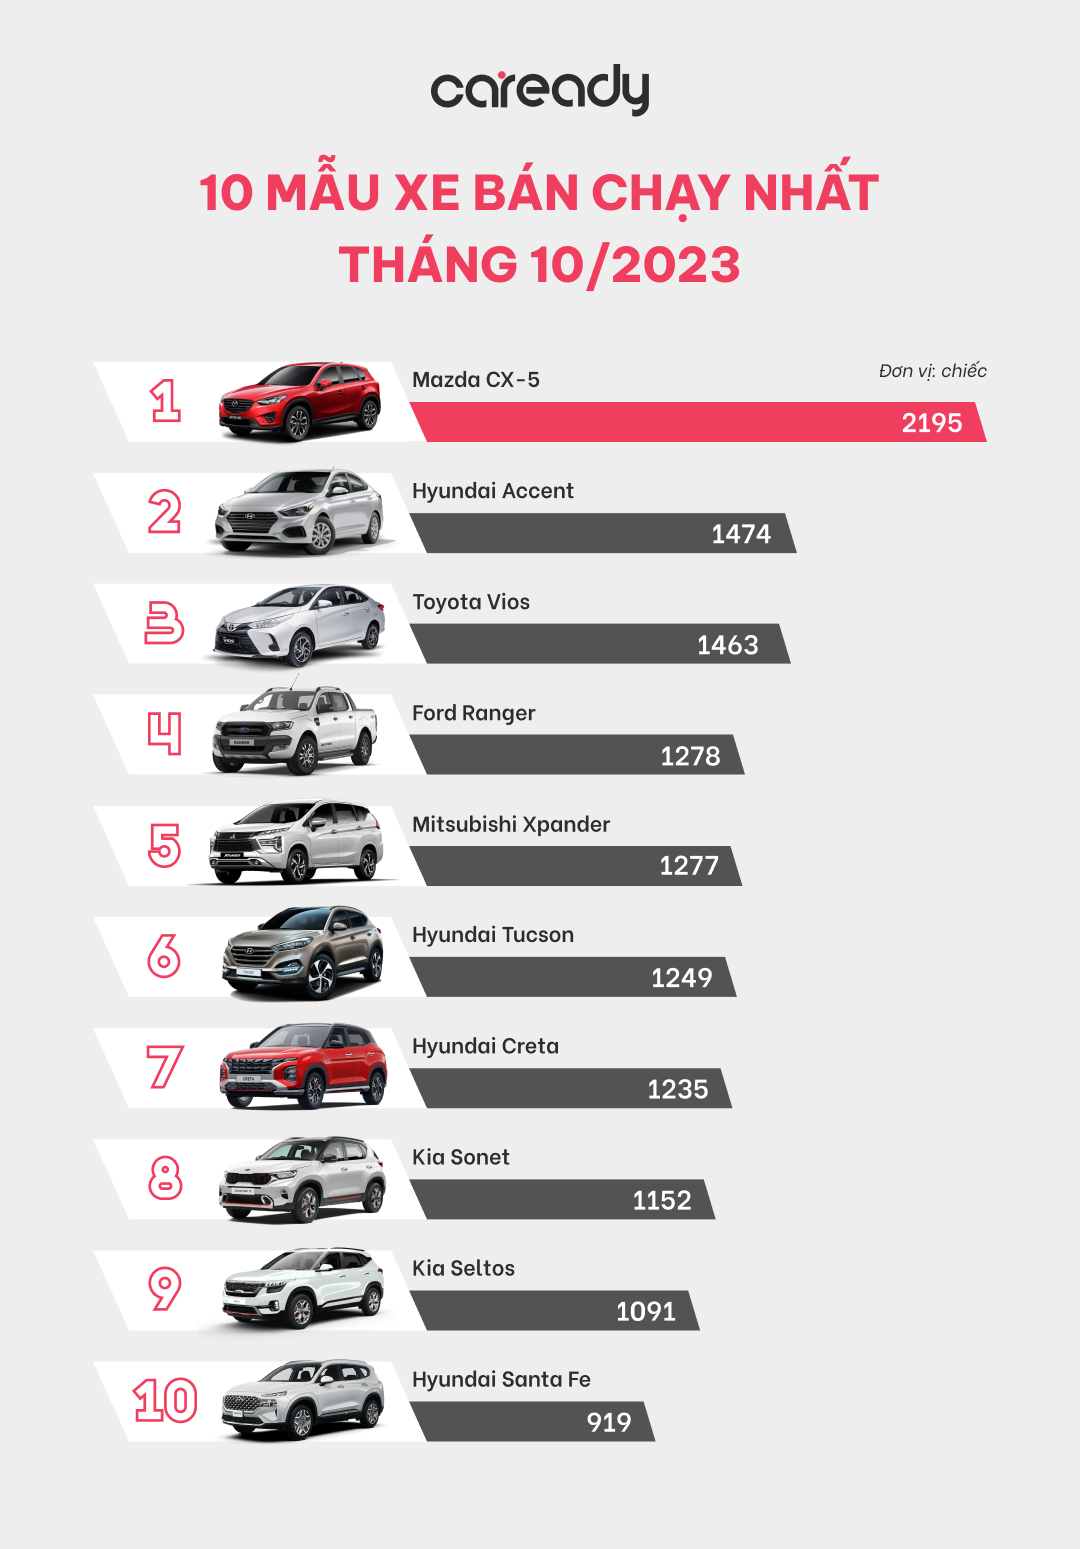 10 mẫu xe có doanh số ấn tượng nhất tháng 10